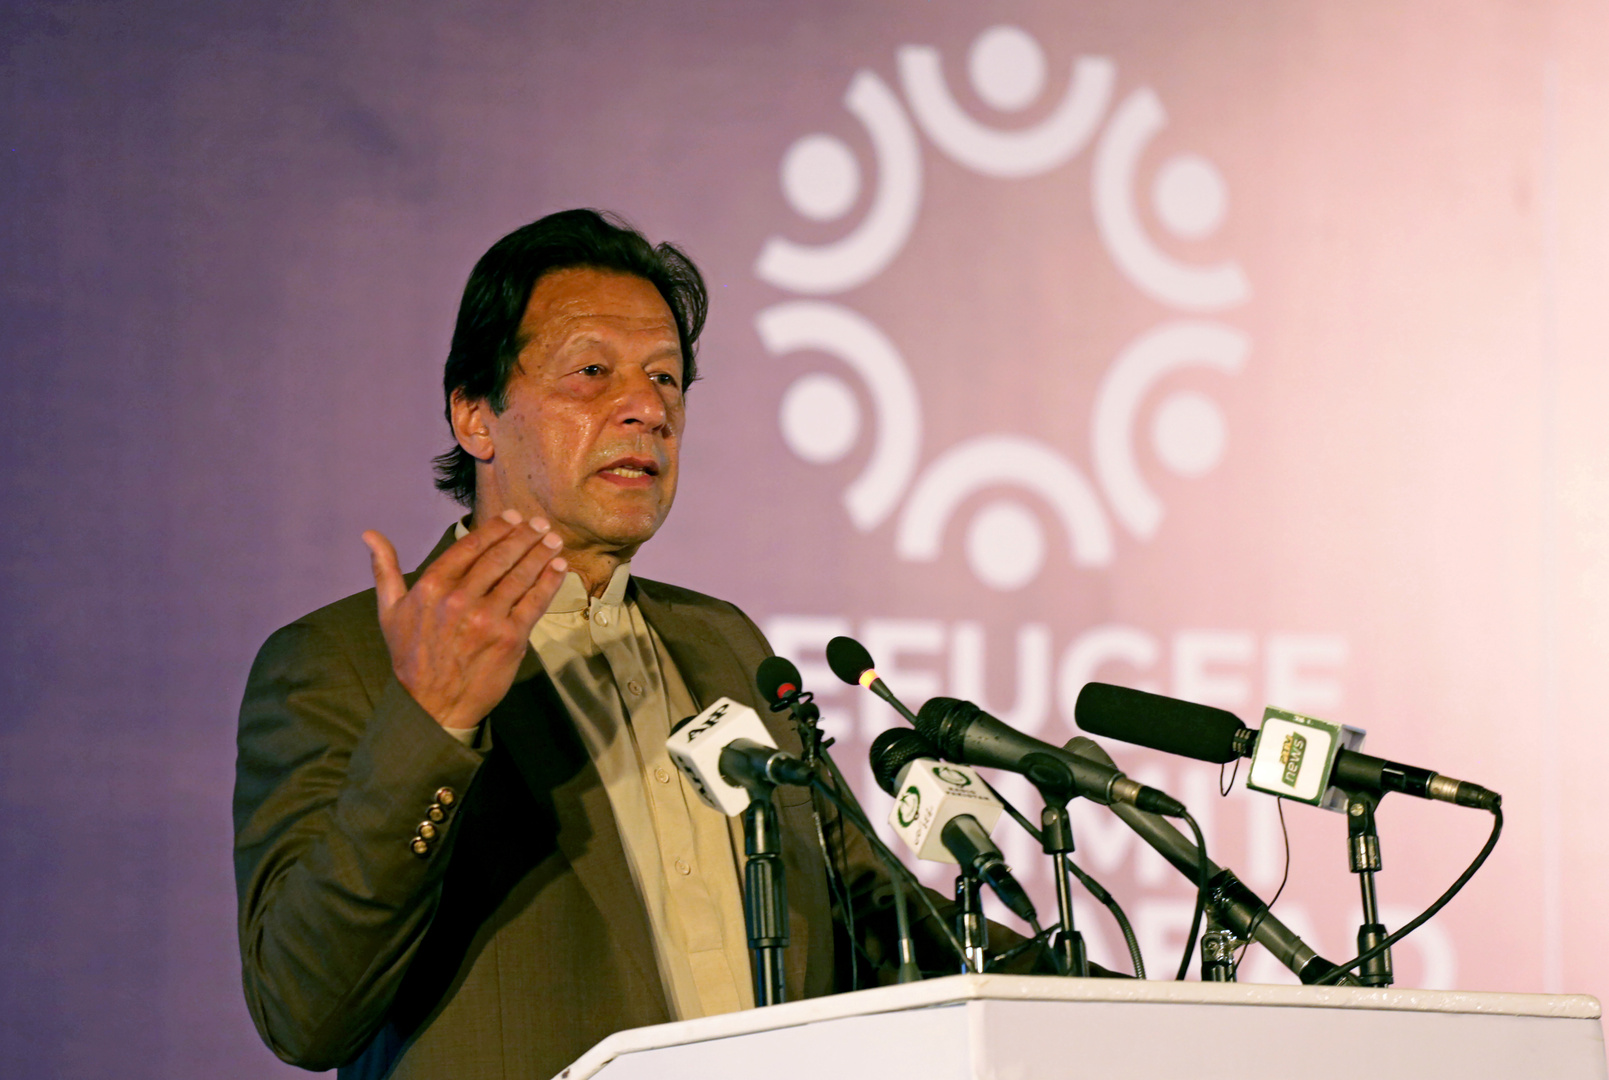 رئيس وزراء باكستان يصف إعادة فتح آيا صوفيا للصلاة بالحدث التاريخي!